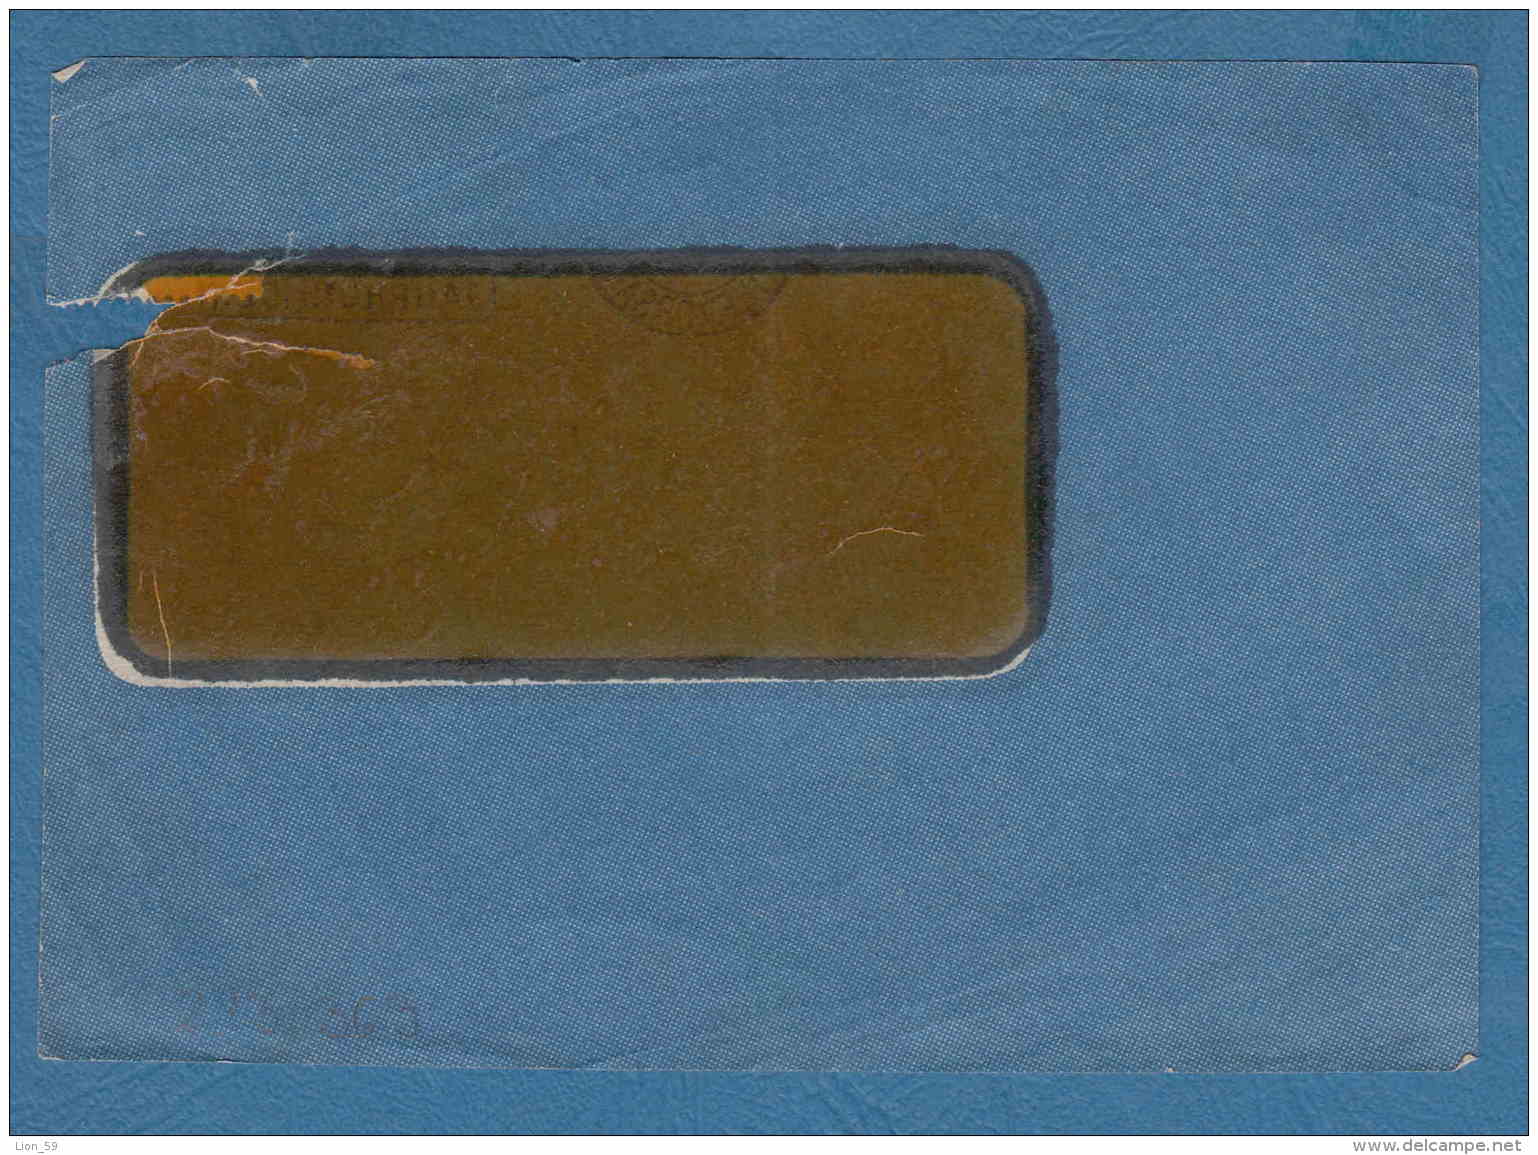 213363 / 1924 - 40 C. - CREDIT SUISSE ZURICH - Perfin Perfores Perforiert Gezähnt Perforati Switzerland Suisse Schweiz - Perforadas